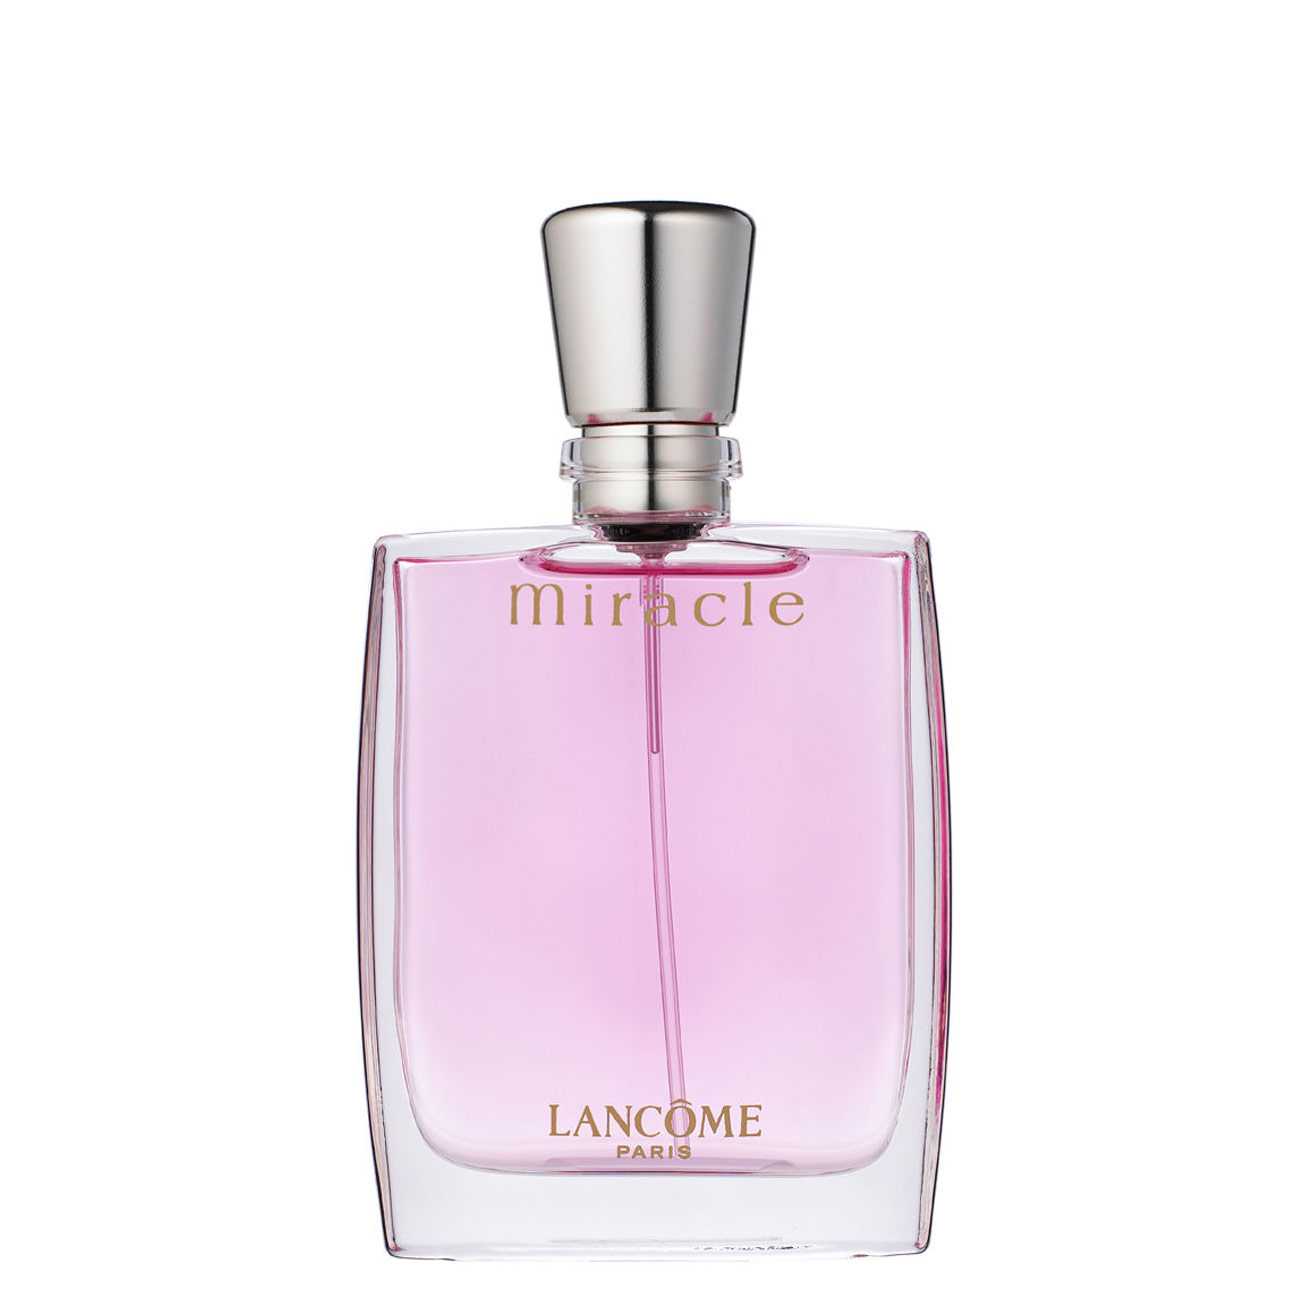 Apa de Parfum Lancôme MIRACLE 100ml cu comanda online